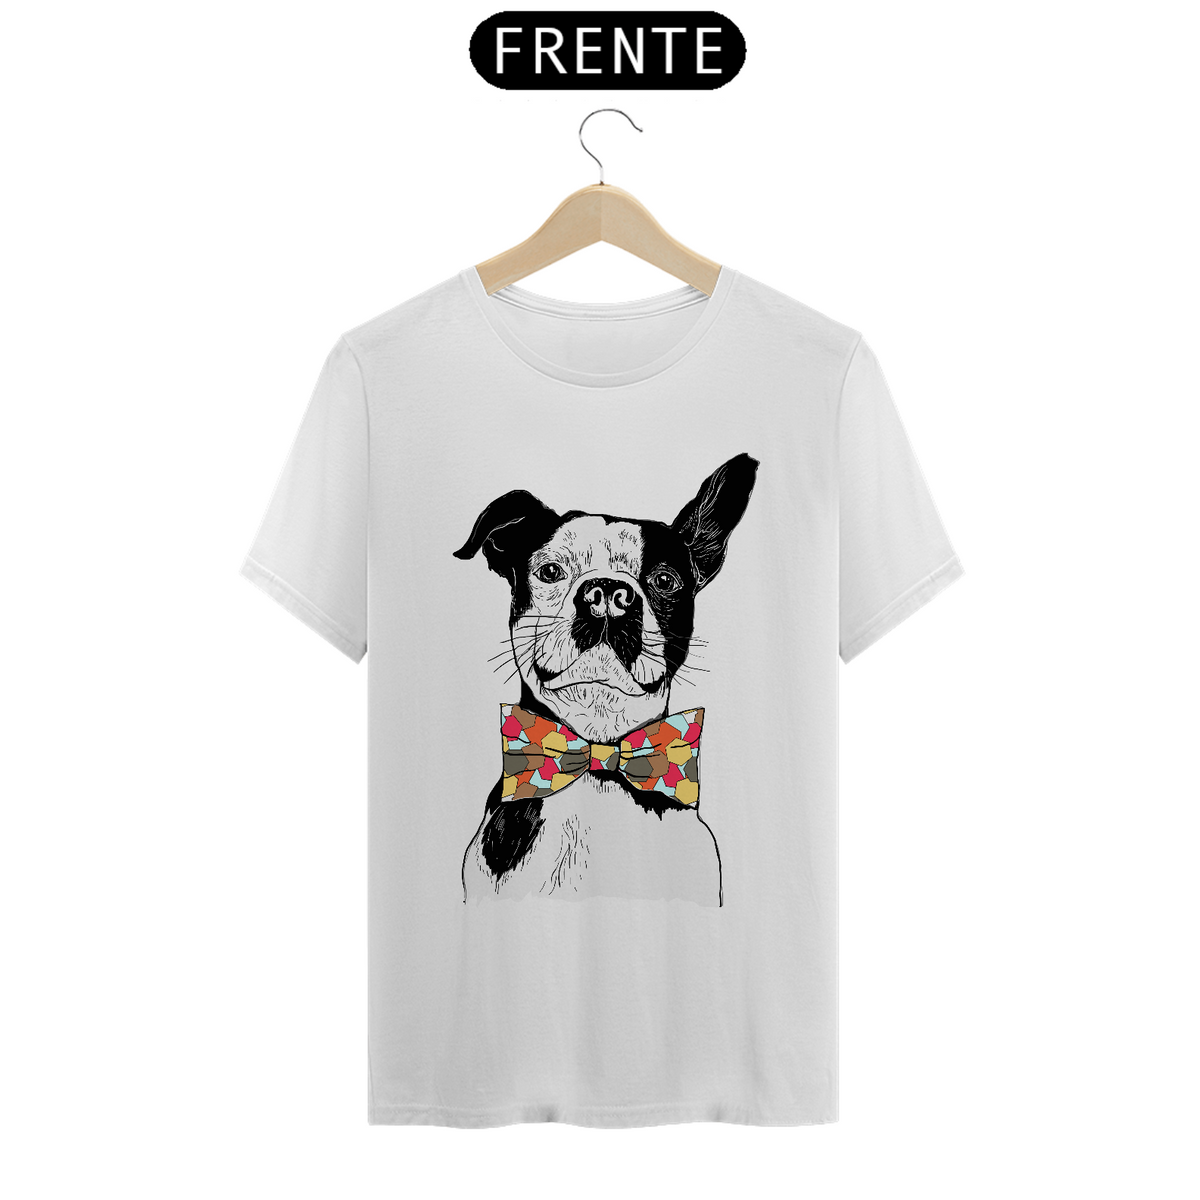 Nome do produto: Camisa com cachorro usando gravata em cartoon